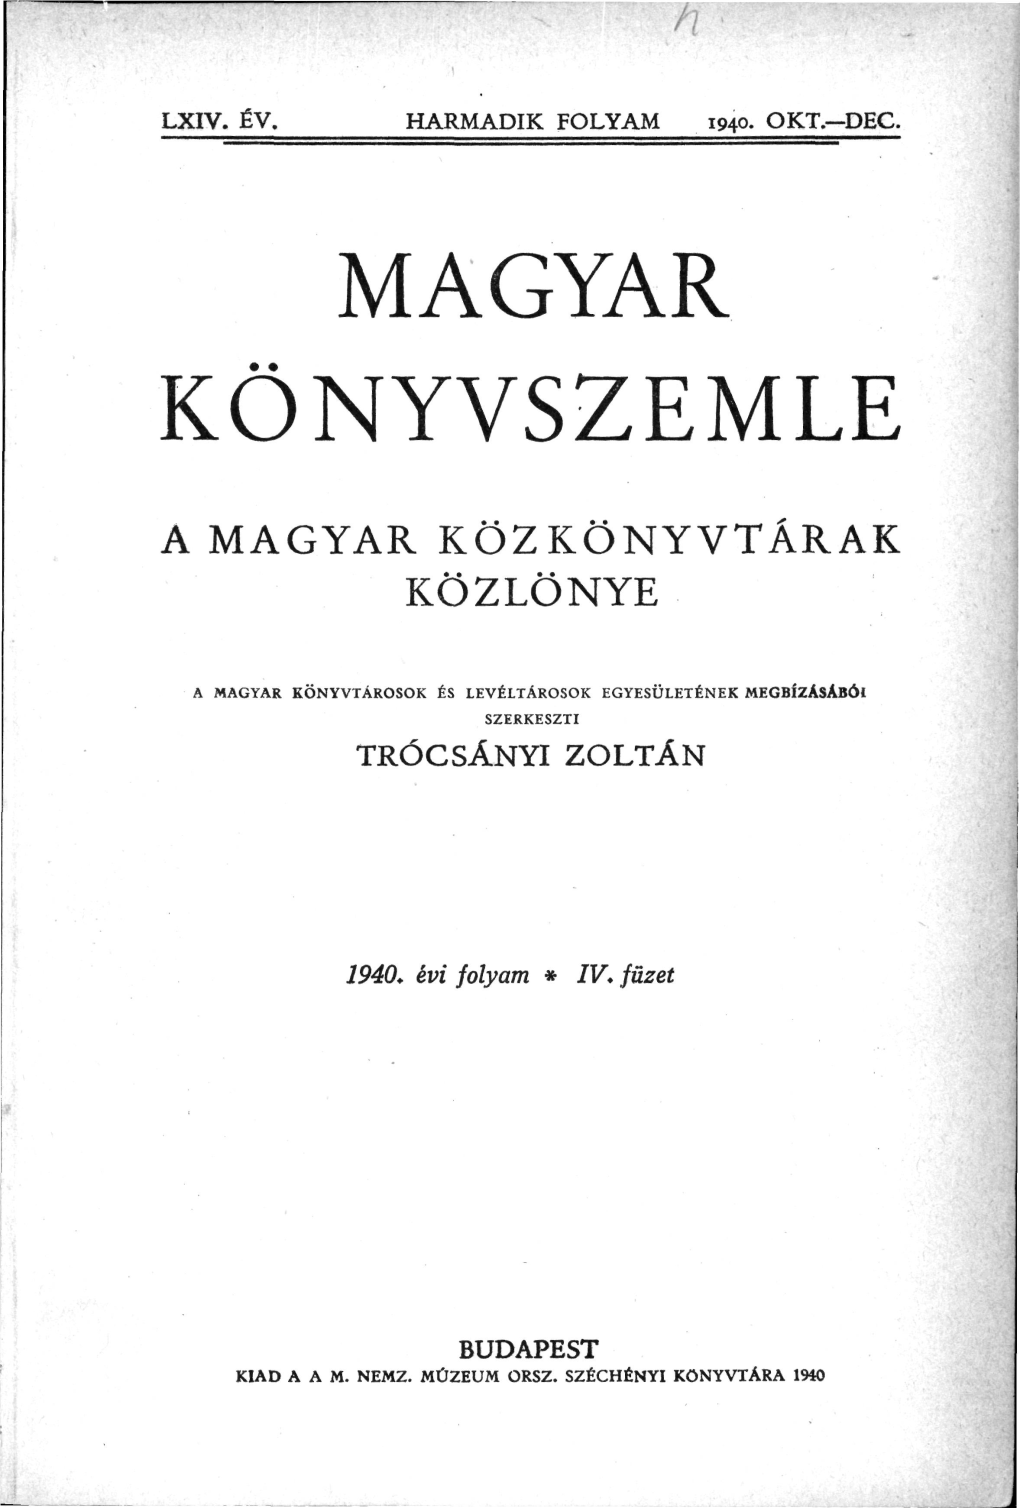 Magyar Könyvszemle LXIV. Év. Harmadik Folyam 4. Füzet 1940. Okt